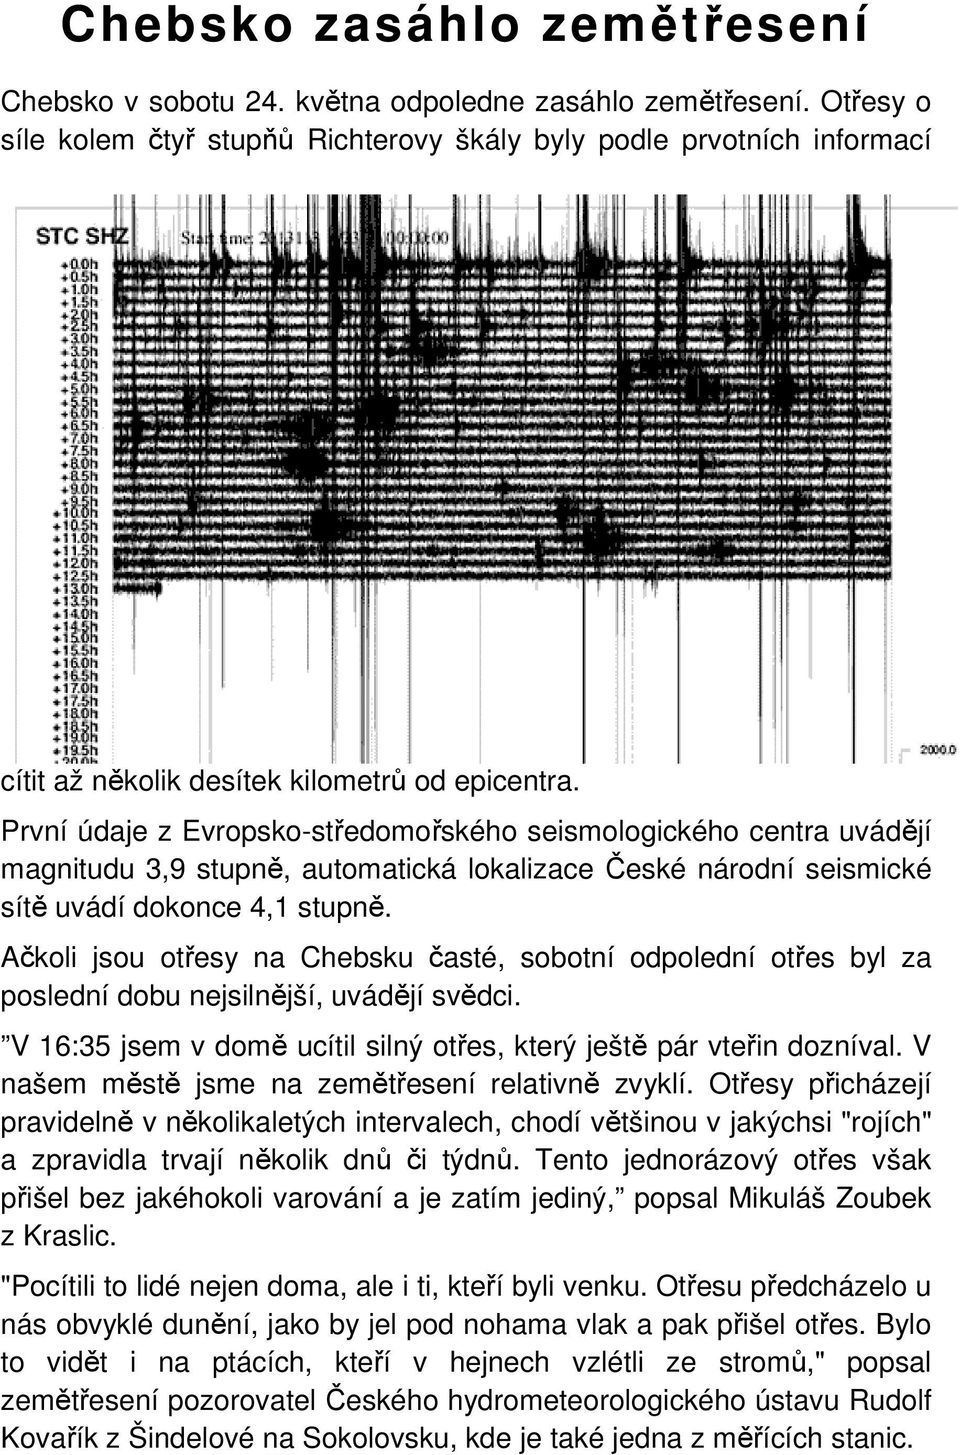 První údaje z Evropsko-středomořského seismologického centra uvádějí magnitudu 3,9 stupně, automatická lokalizace České národní seismické sítě uvádí dokonce 4,1 stupně.